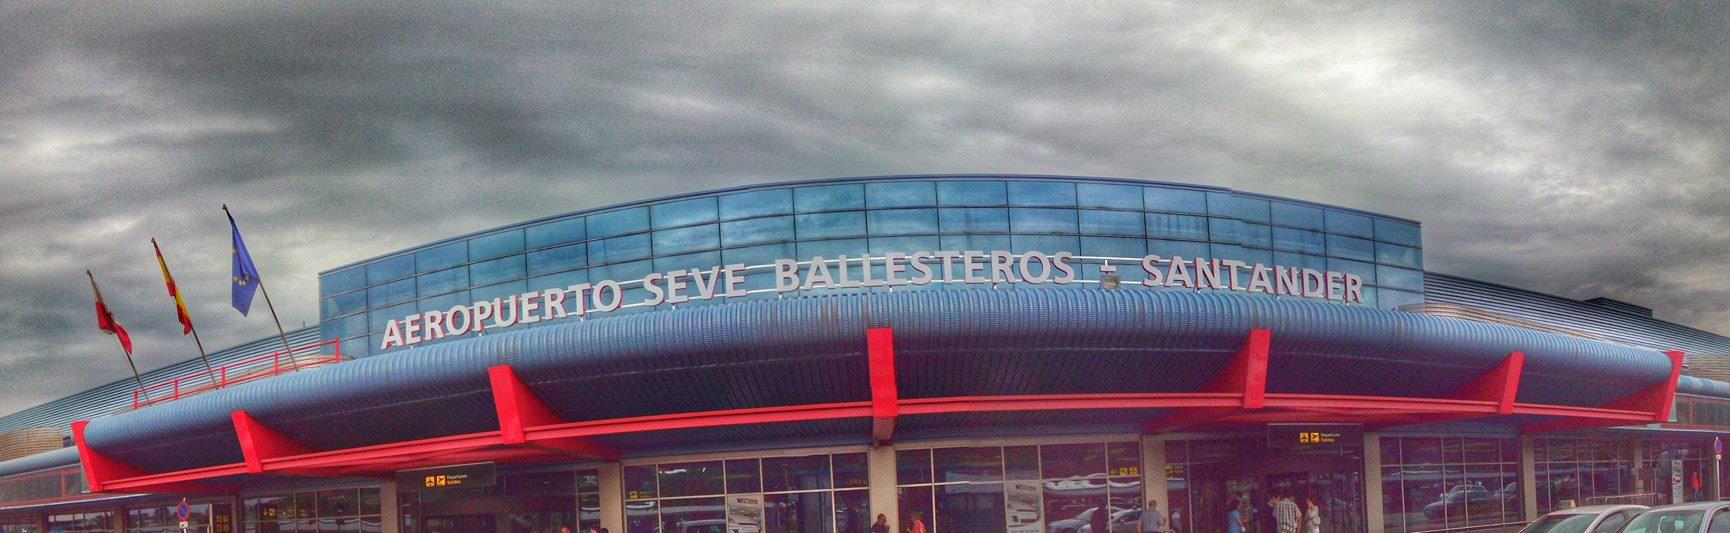 Aeropuerto Seve Ballesteros Santander